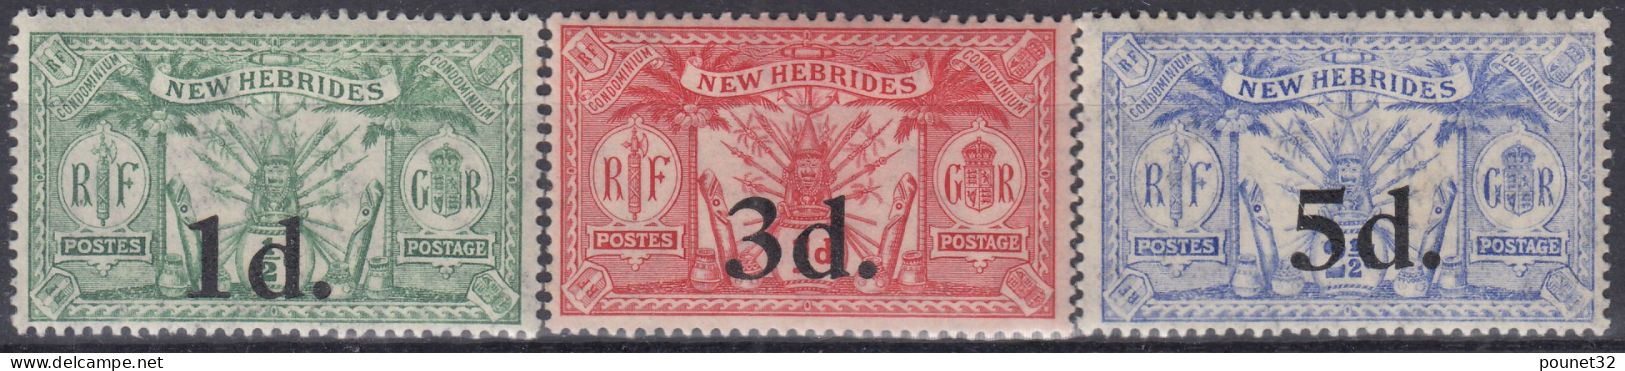 NEW HEBRIDES TIMBRES DE 1924 N° 77/79 NEUFS * GOMME AVEC CHARNIERE - TRES FRAIS - Unused Stamps